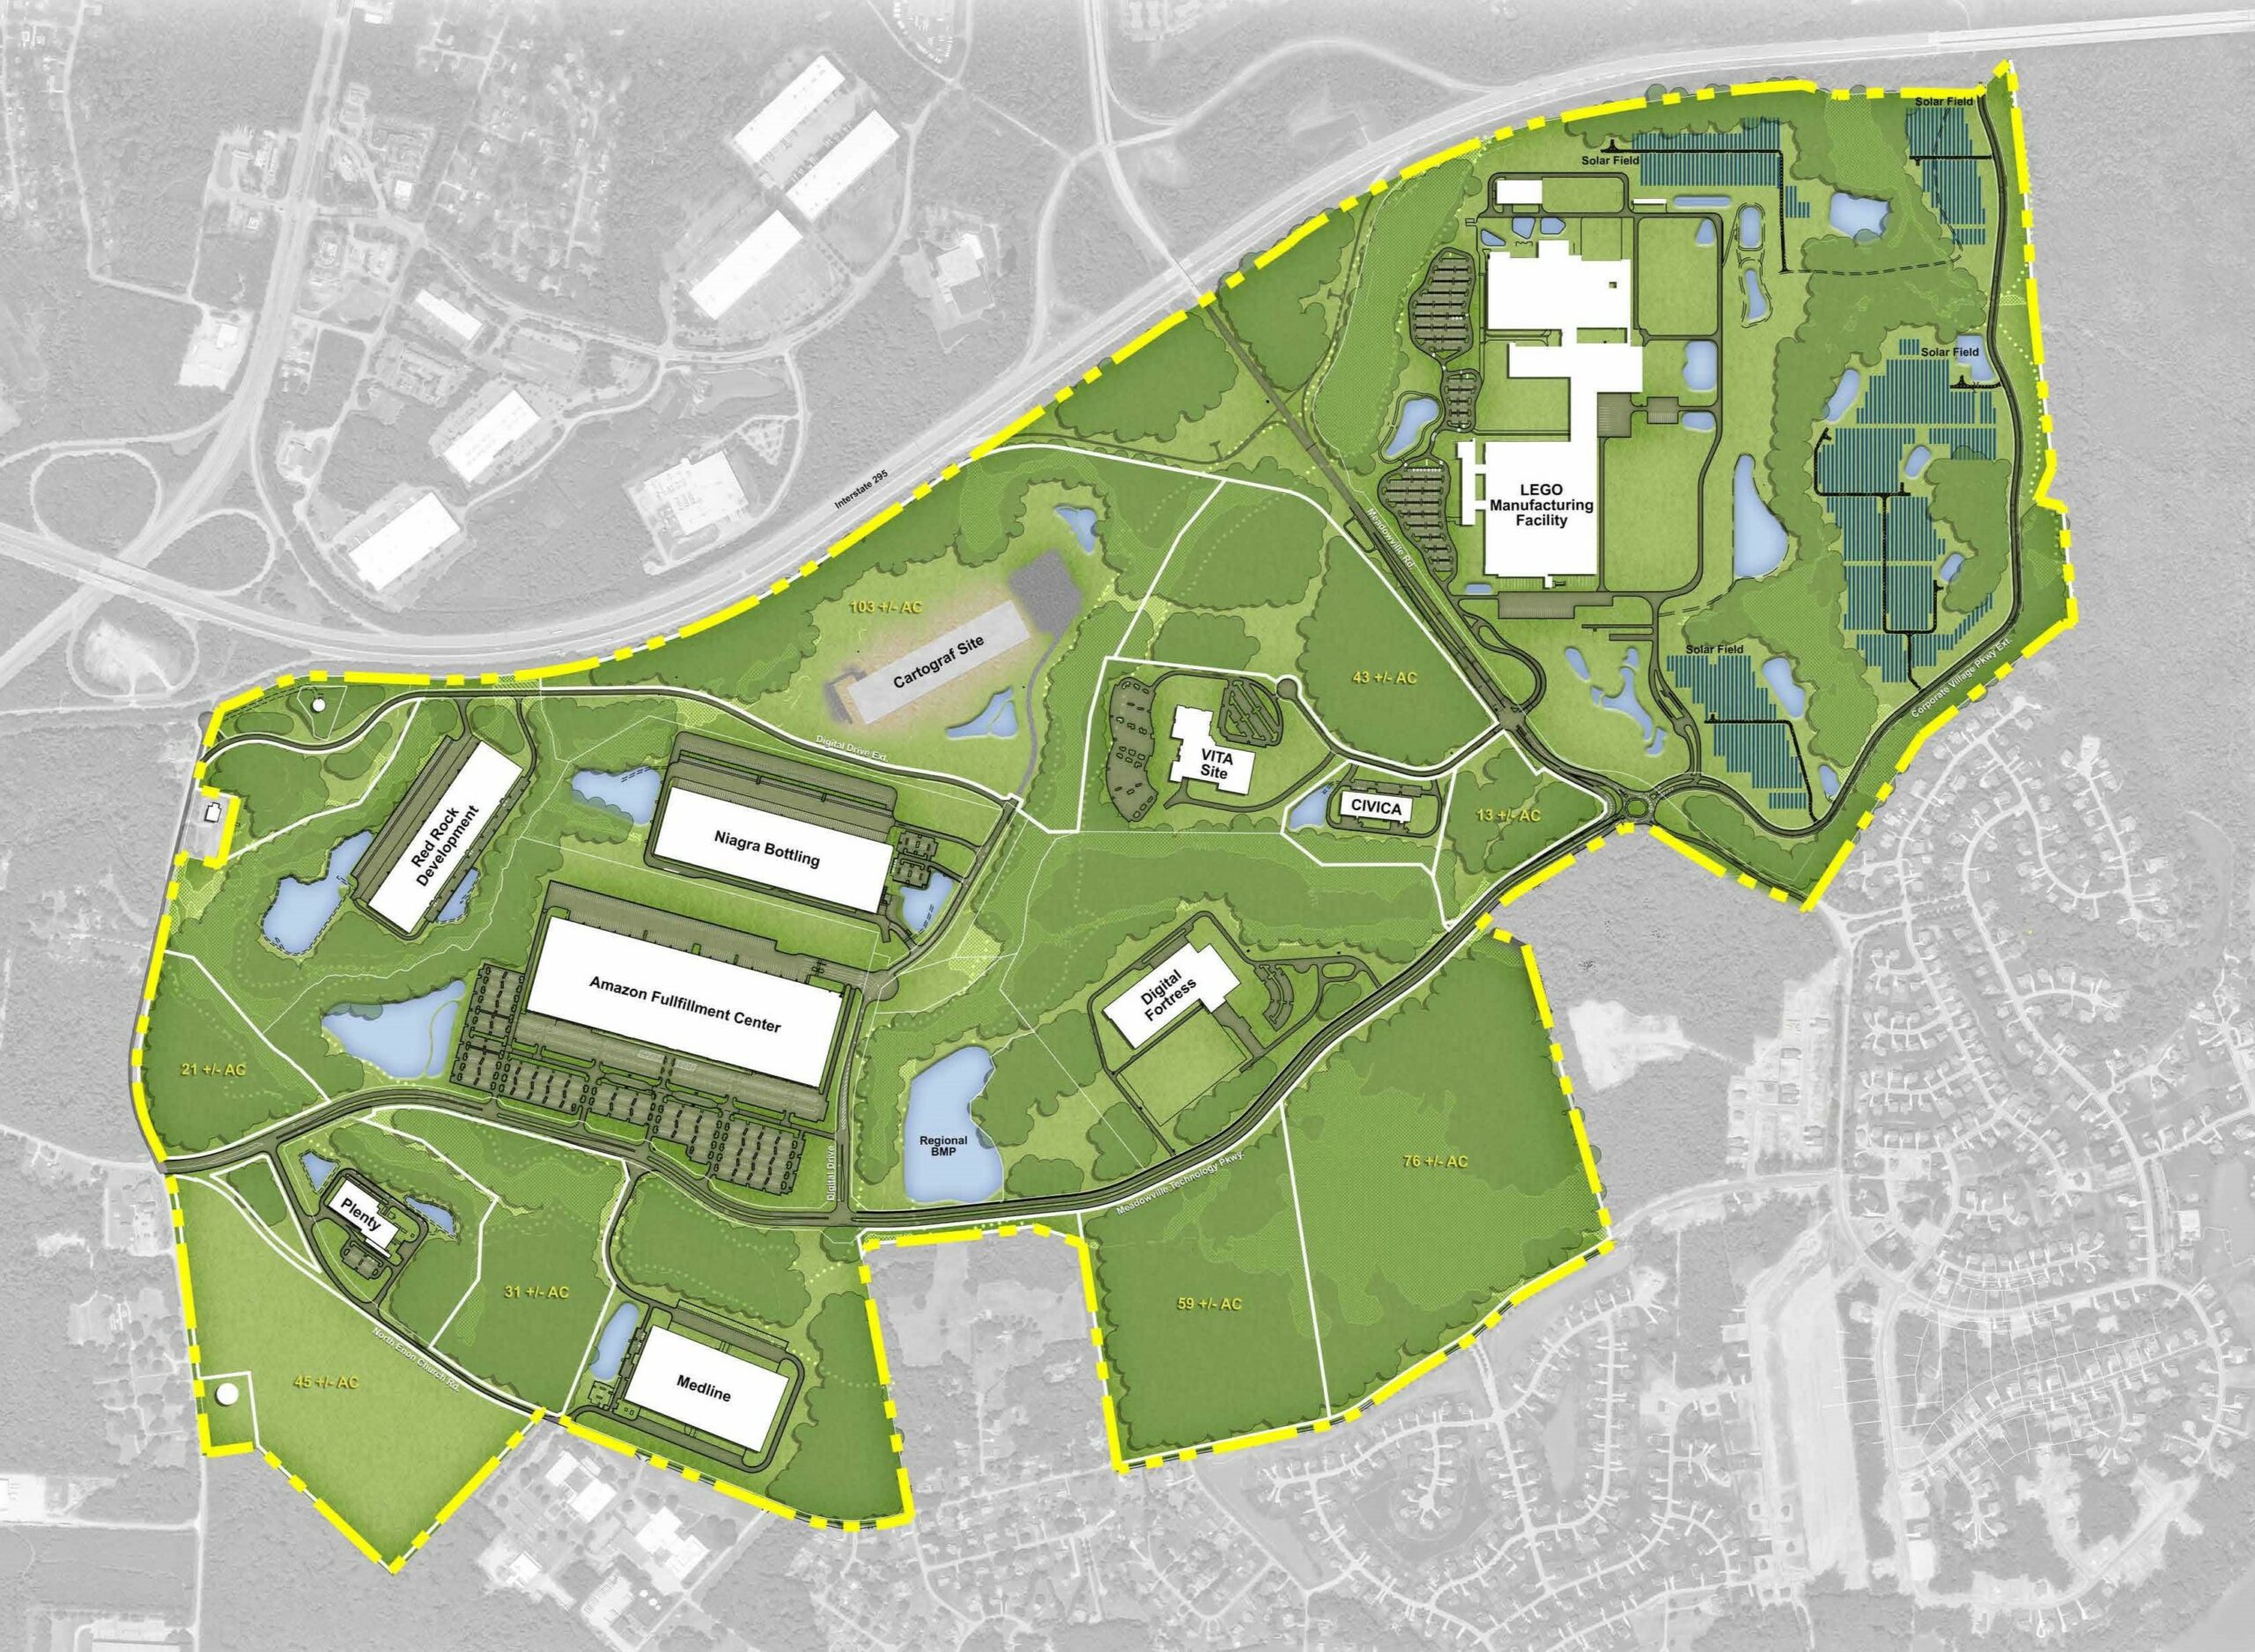 Meadowville technology Park layout design